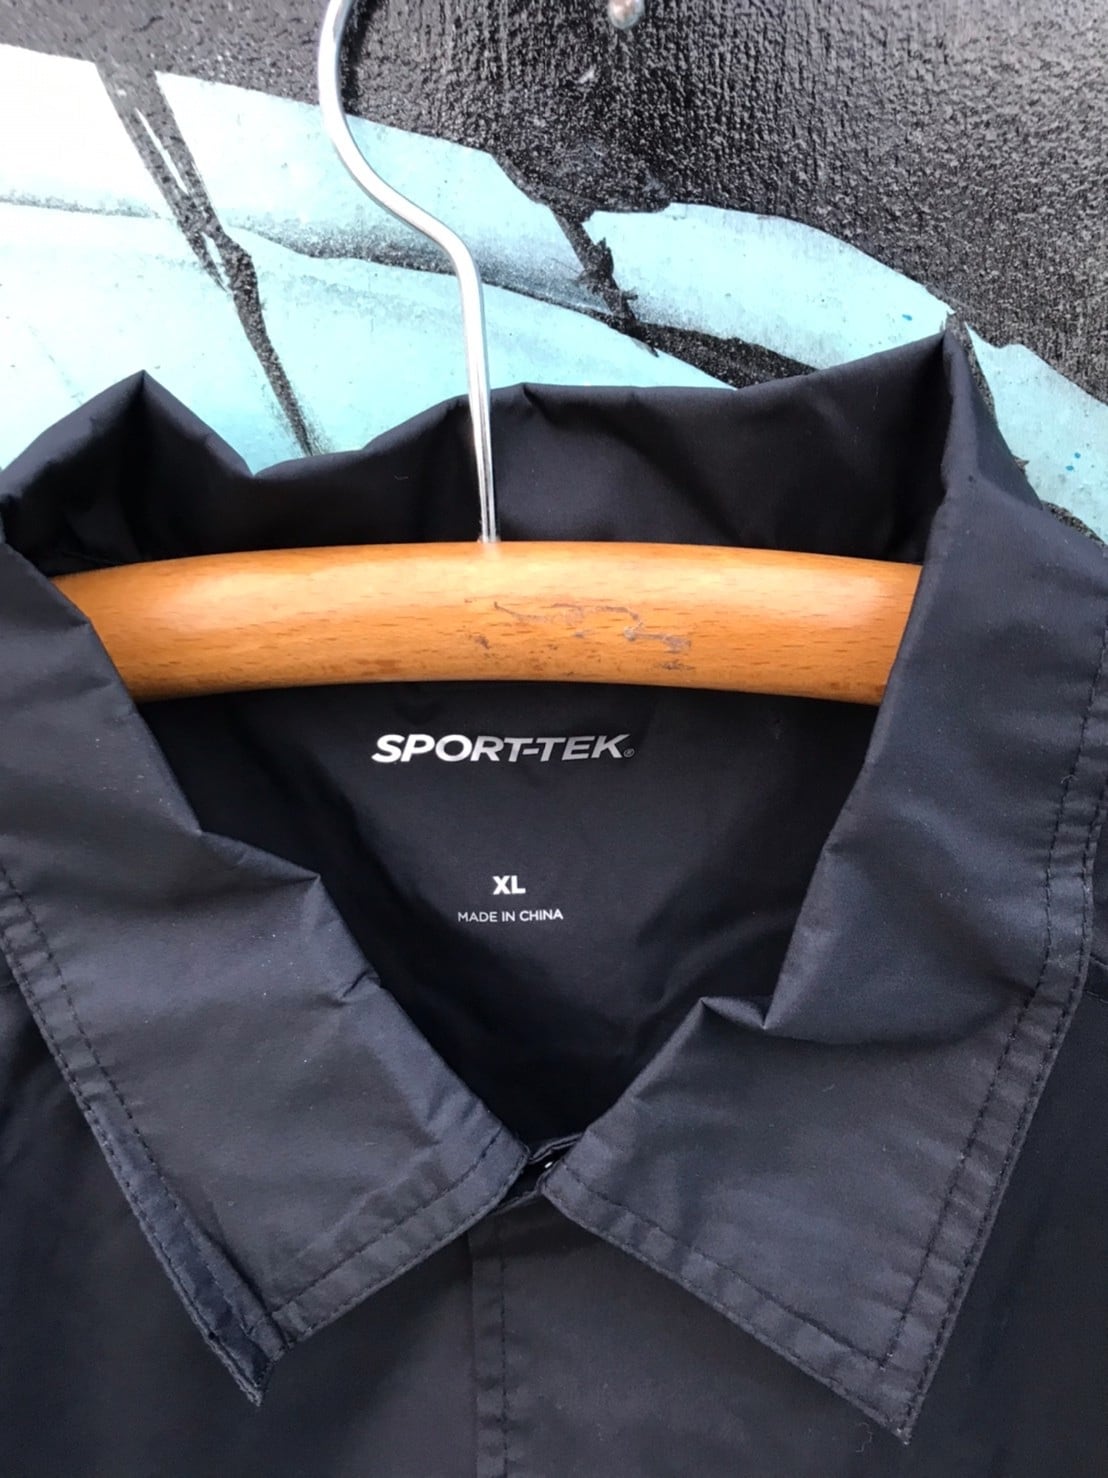 BRONZE AGE VENICE UNDERGROUND Sport Tek sideline jacket made in